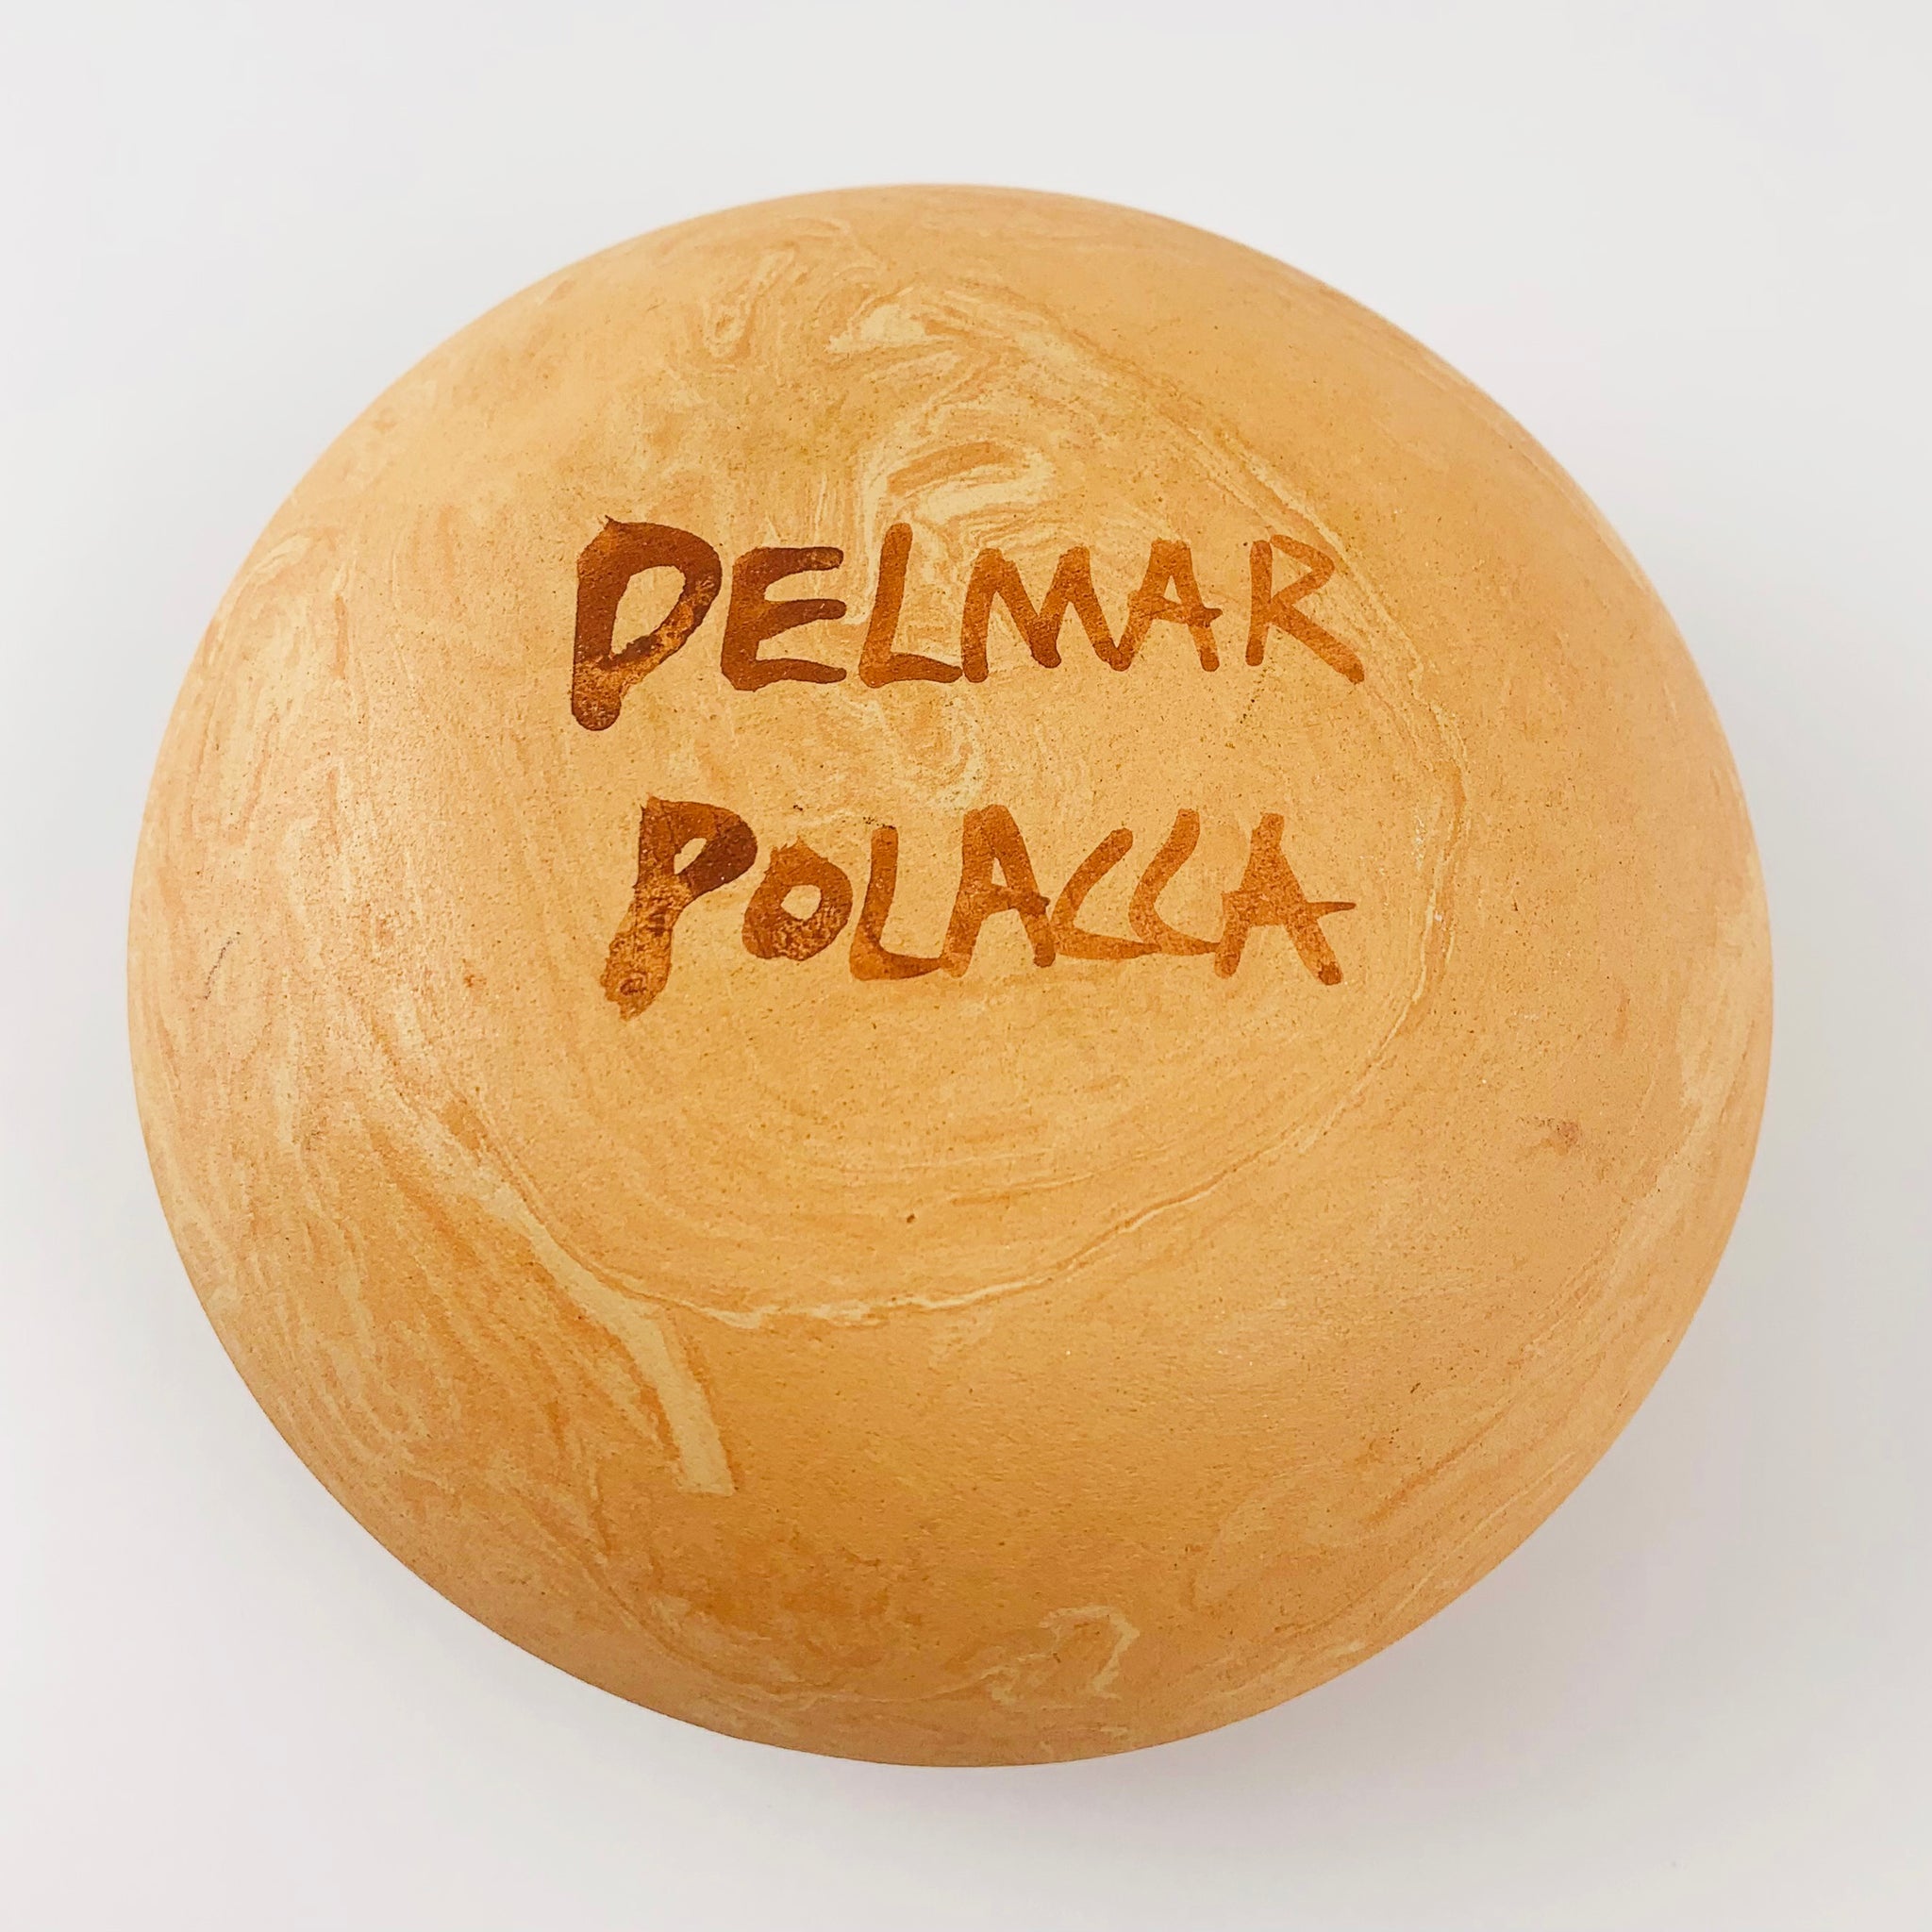 Delmar Polacca Pottery - Corn Maiden